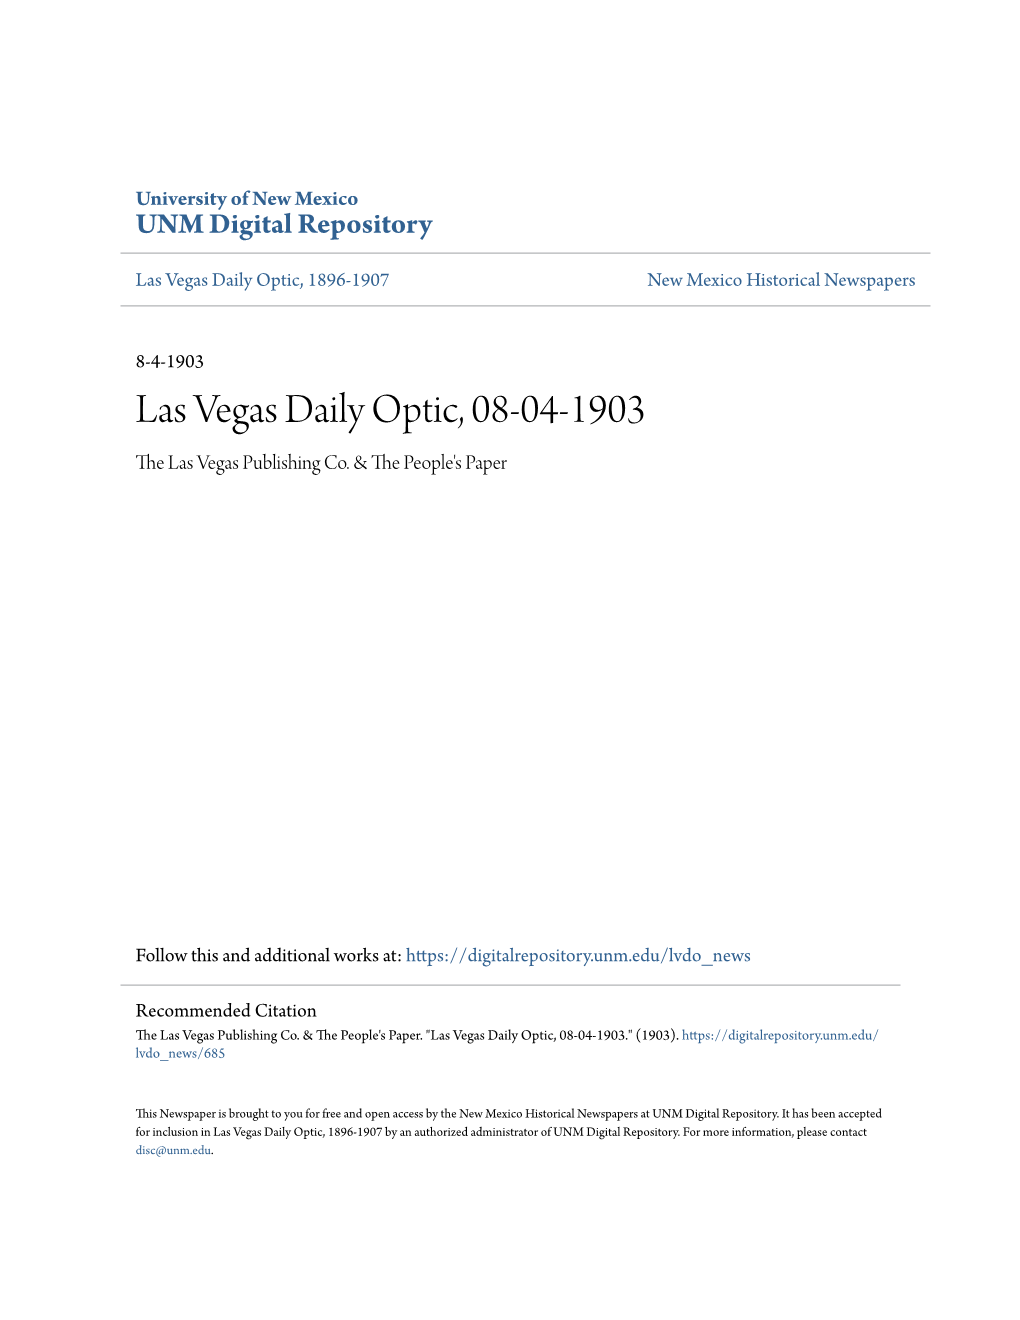 Las Vegas Daily Optic, 08-04-1903 the Las Vegas Publishing Co